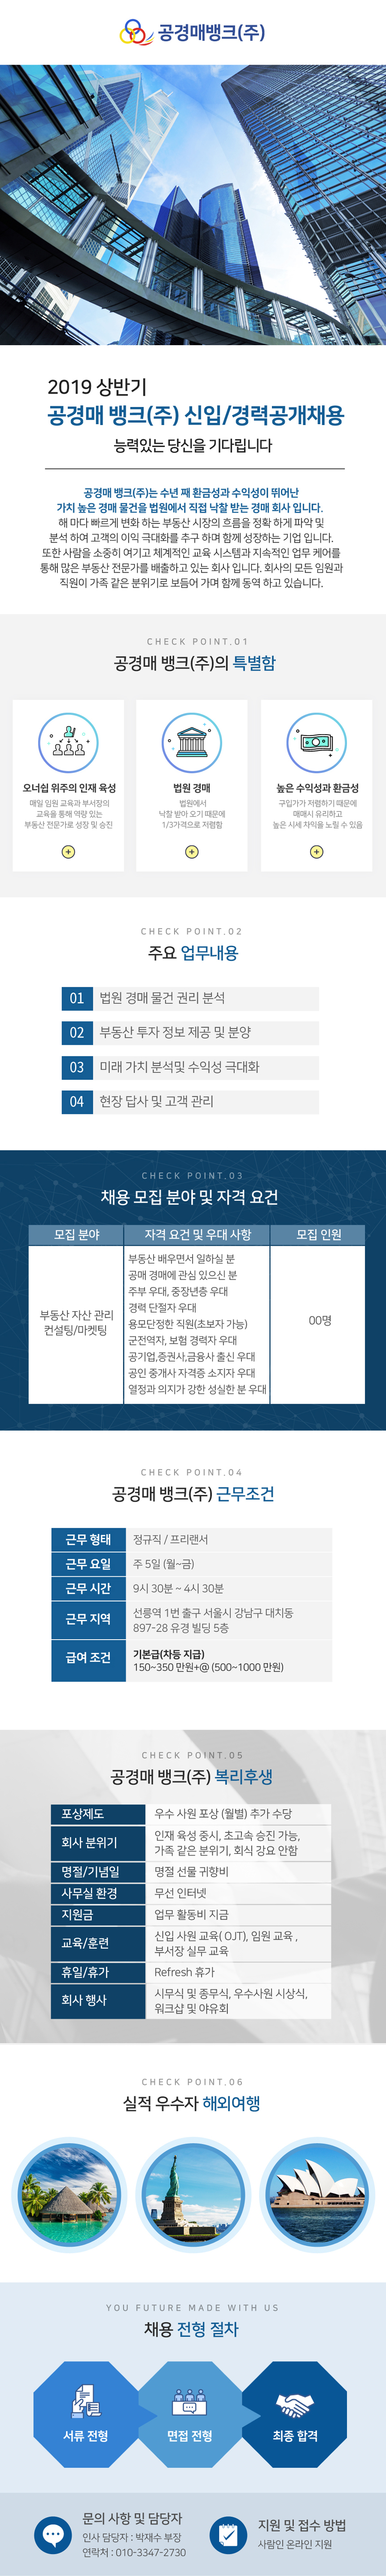 [기본급 보장] 2019 상반기 공경매뱅크(주) 신입/경력공개채용